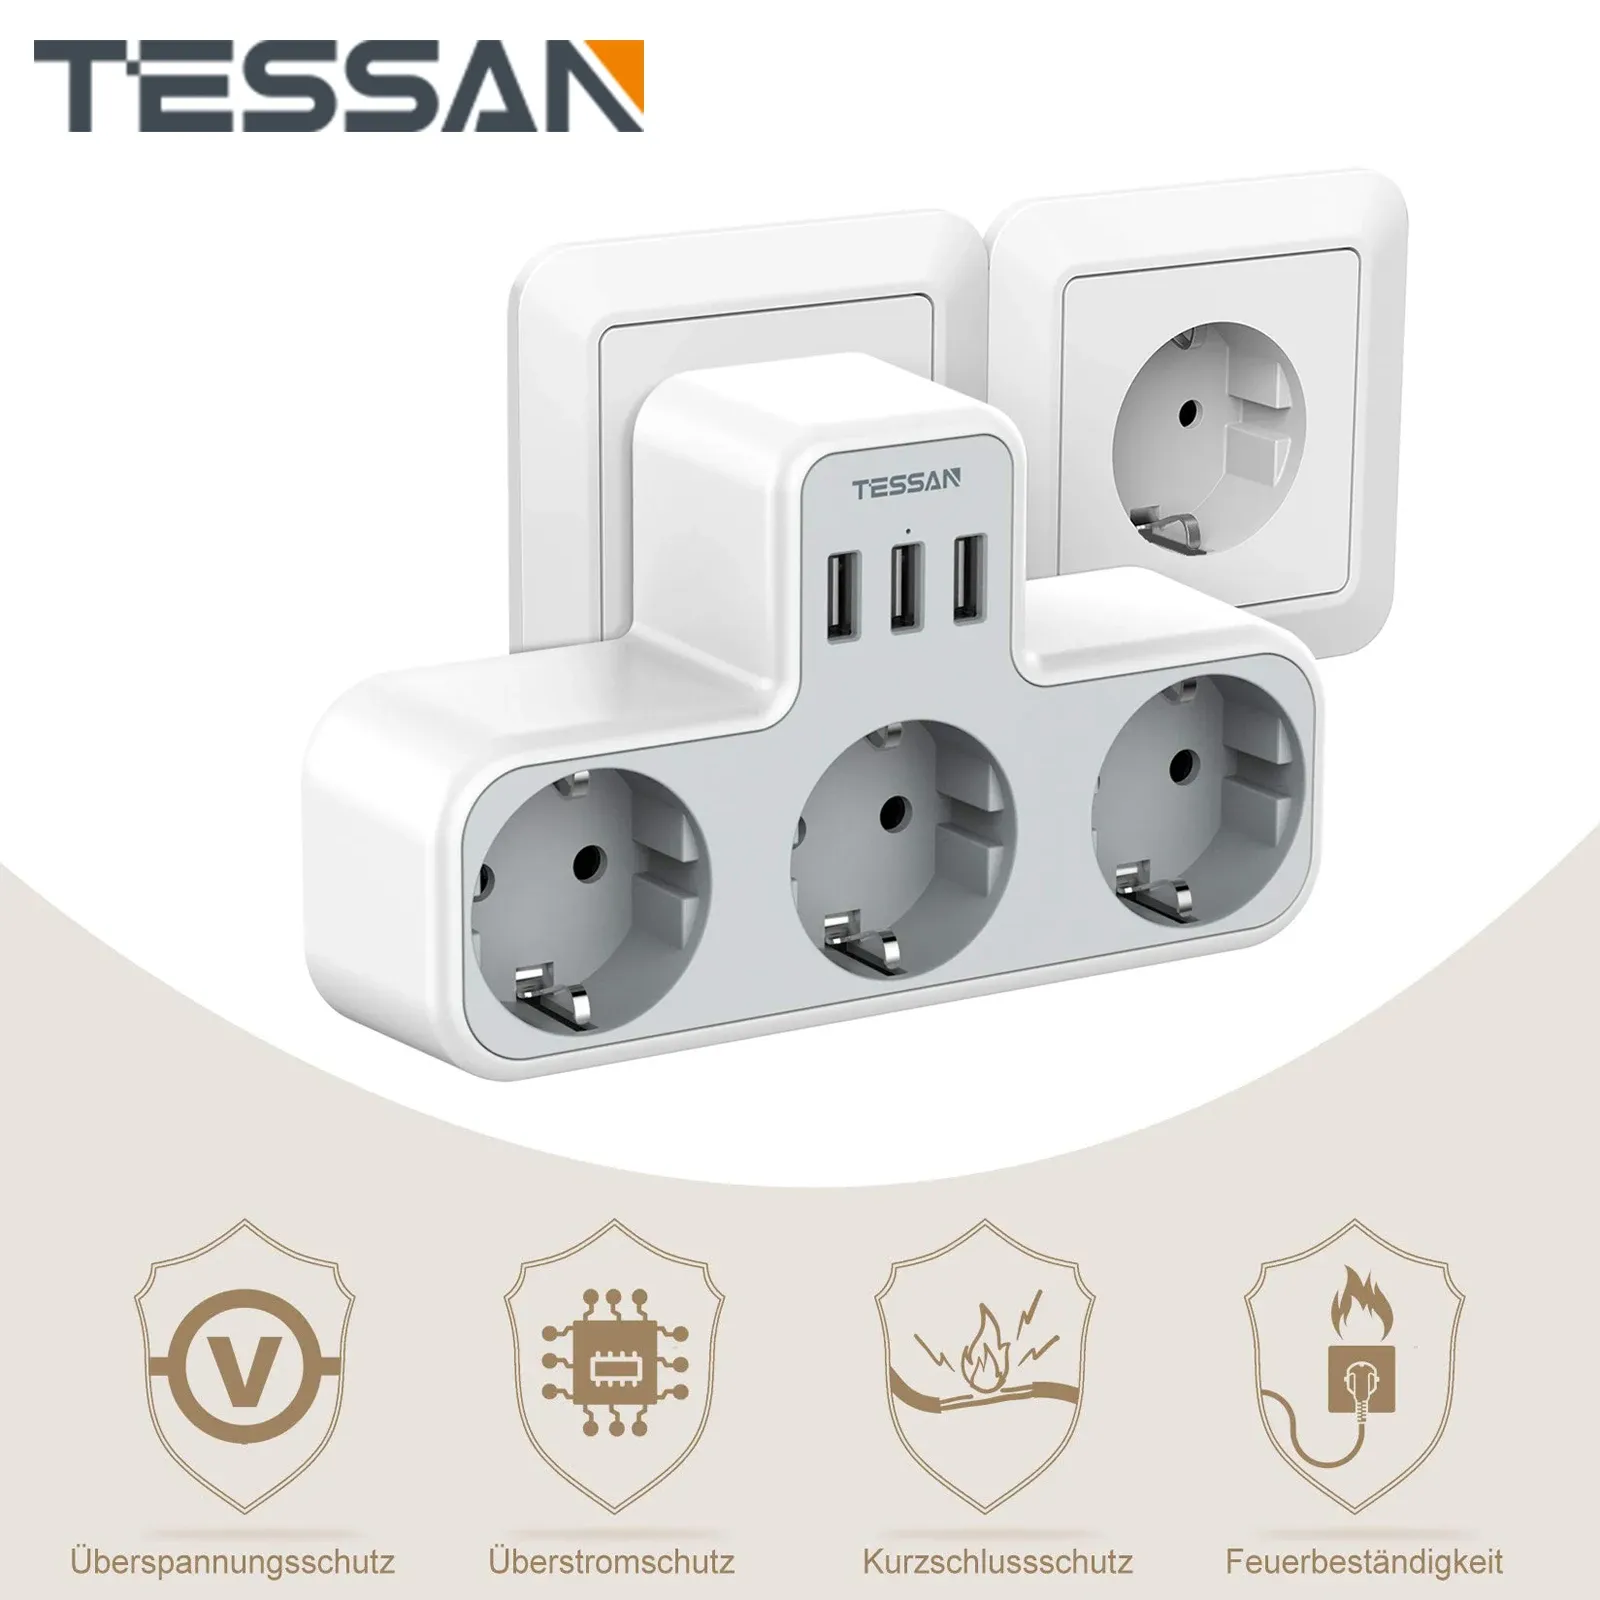 Sacs Tessan 3WAY PORTE avec protection contre la surtension USB, adaptateur de socket 6in1 avec 3 ports USB 5V / 2.4A pour smartphone, ordinateur portable, appareil photo